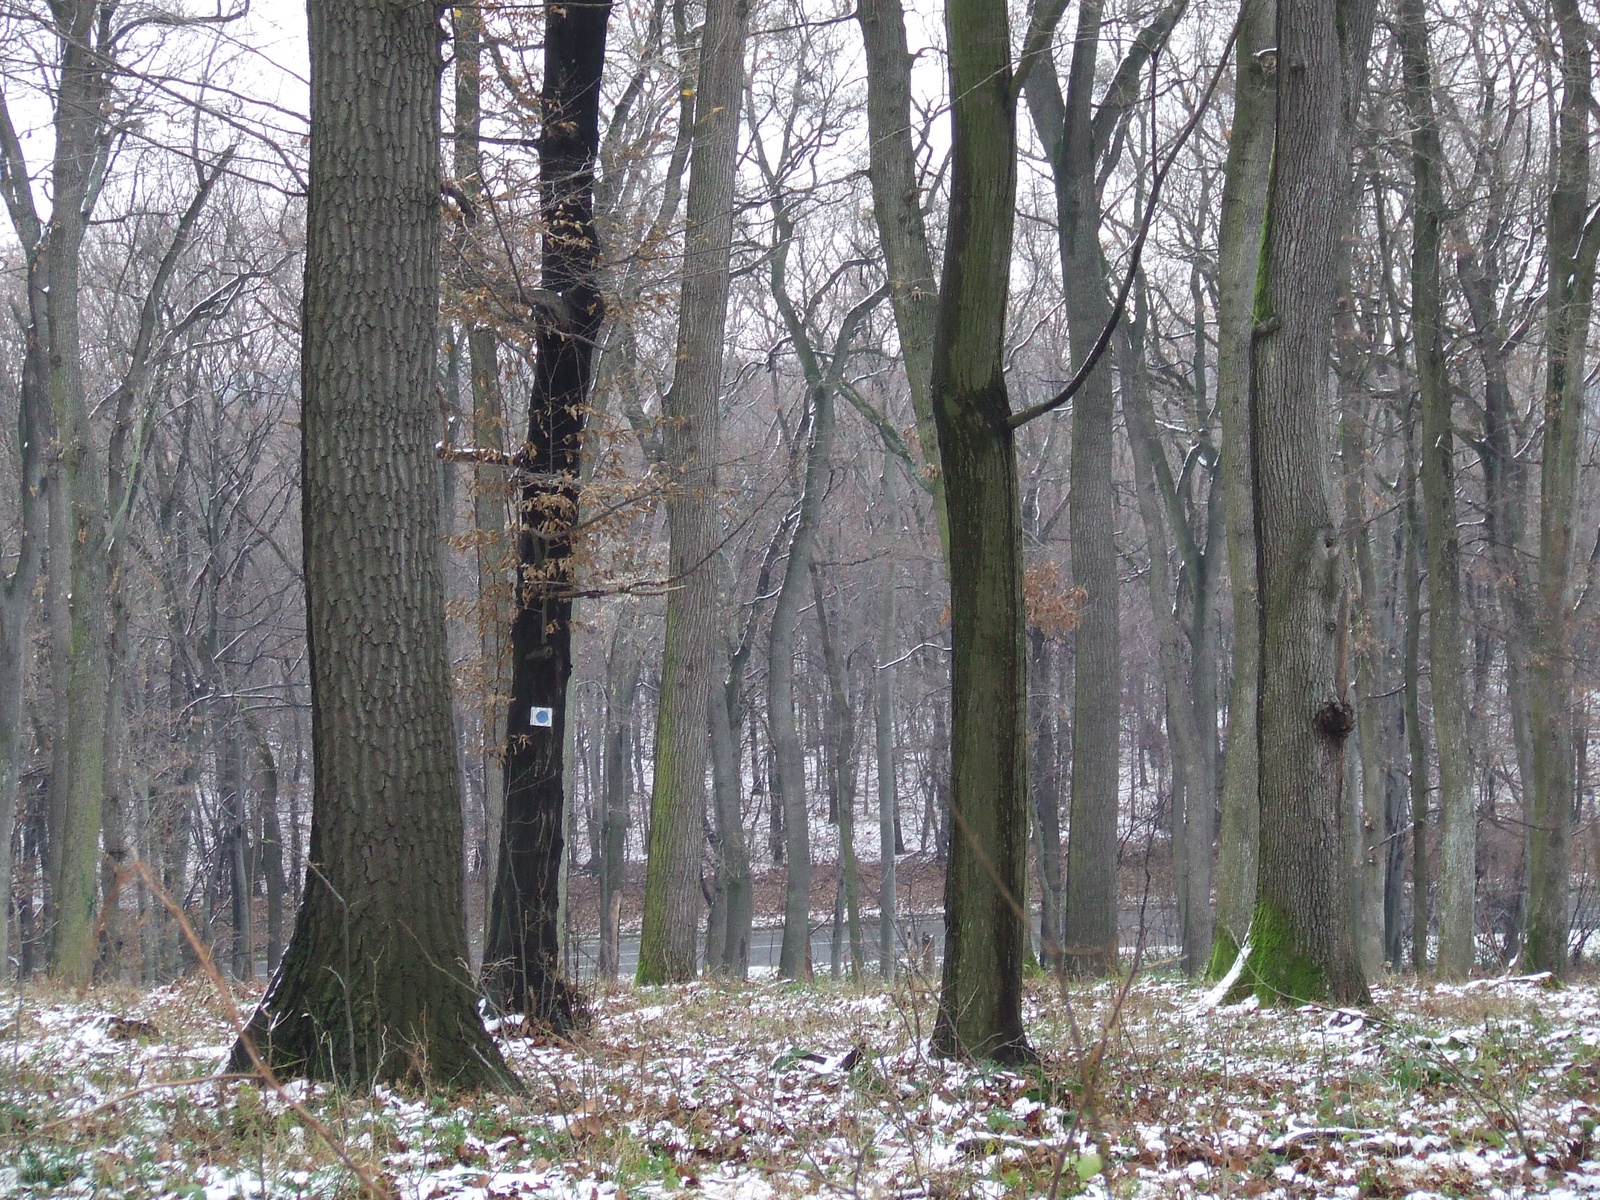 A egyik régi jel az erdőben (ösvény nincs). Kép: N46,19720 E18,4